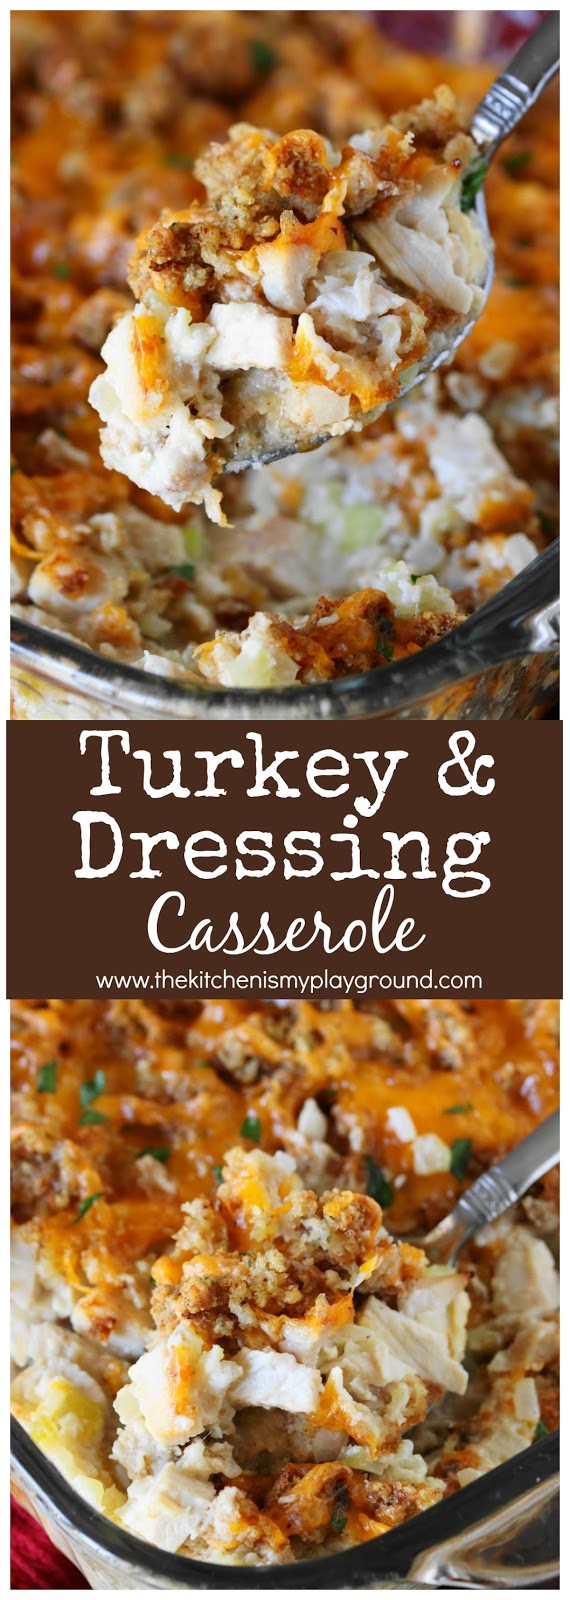 Turkey & Dressing Casserole - The Kitchen is My Playground